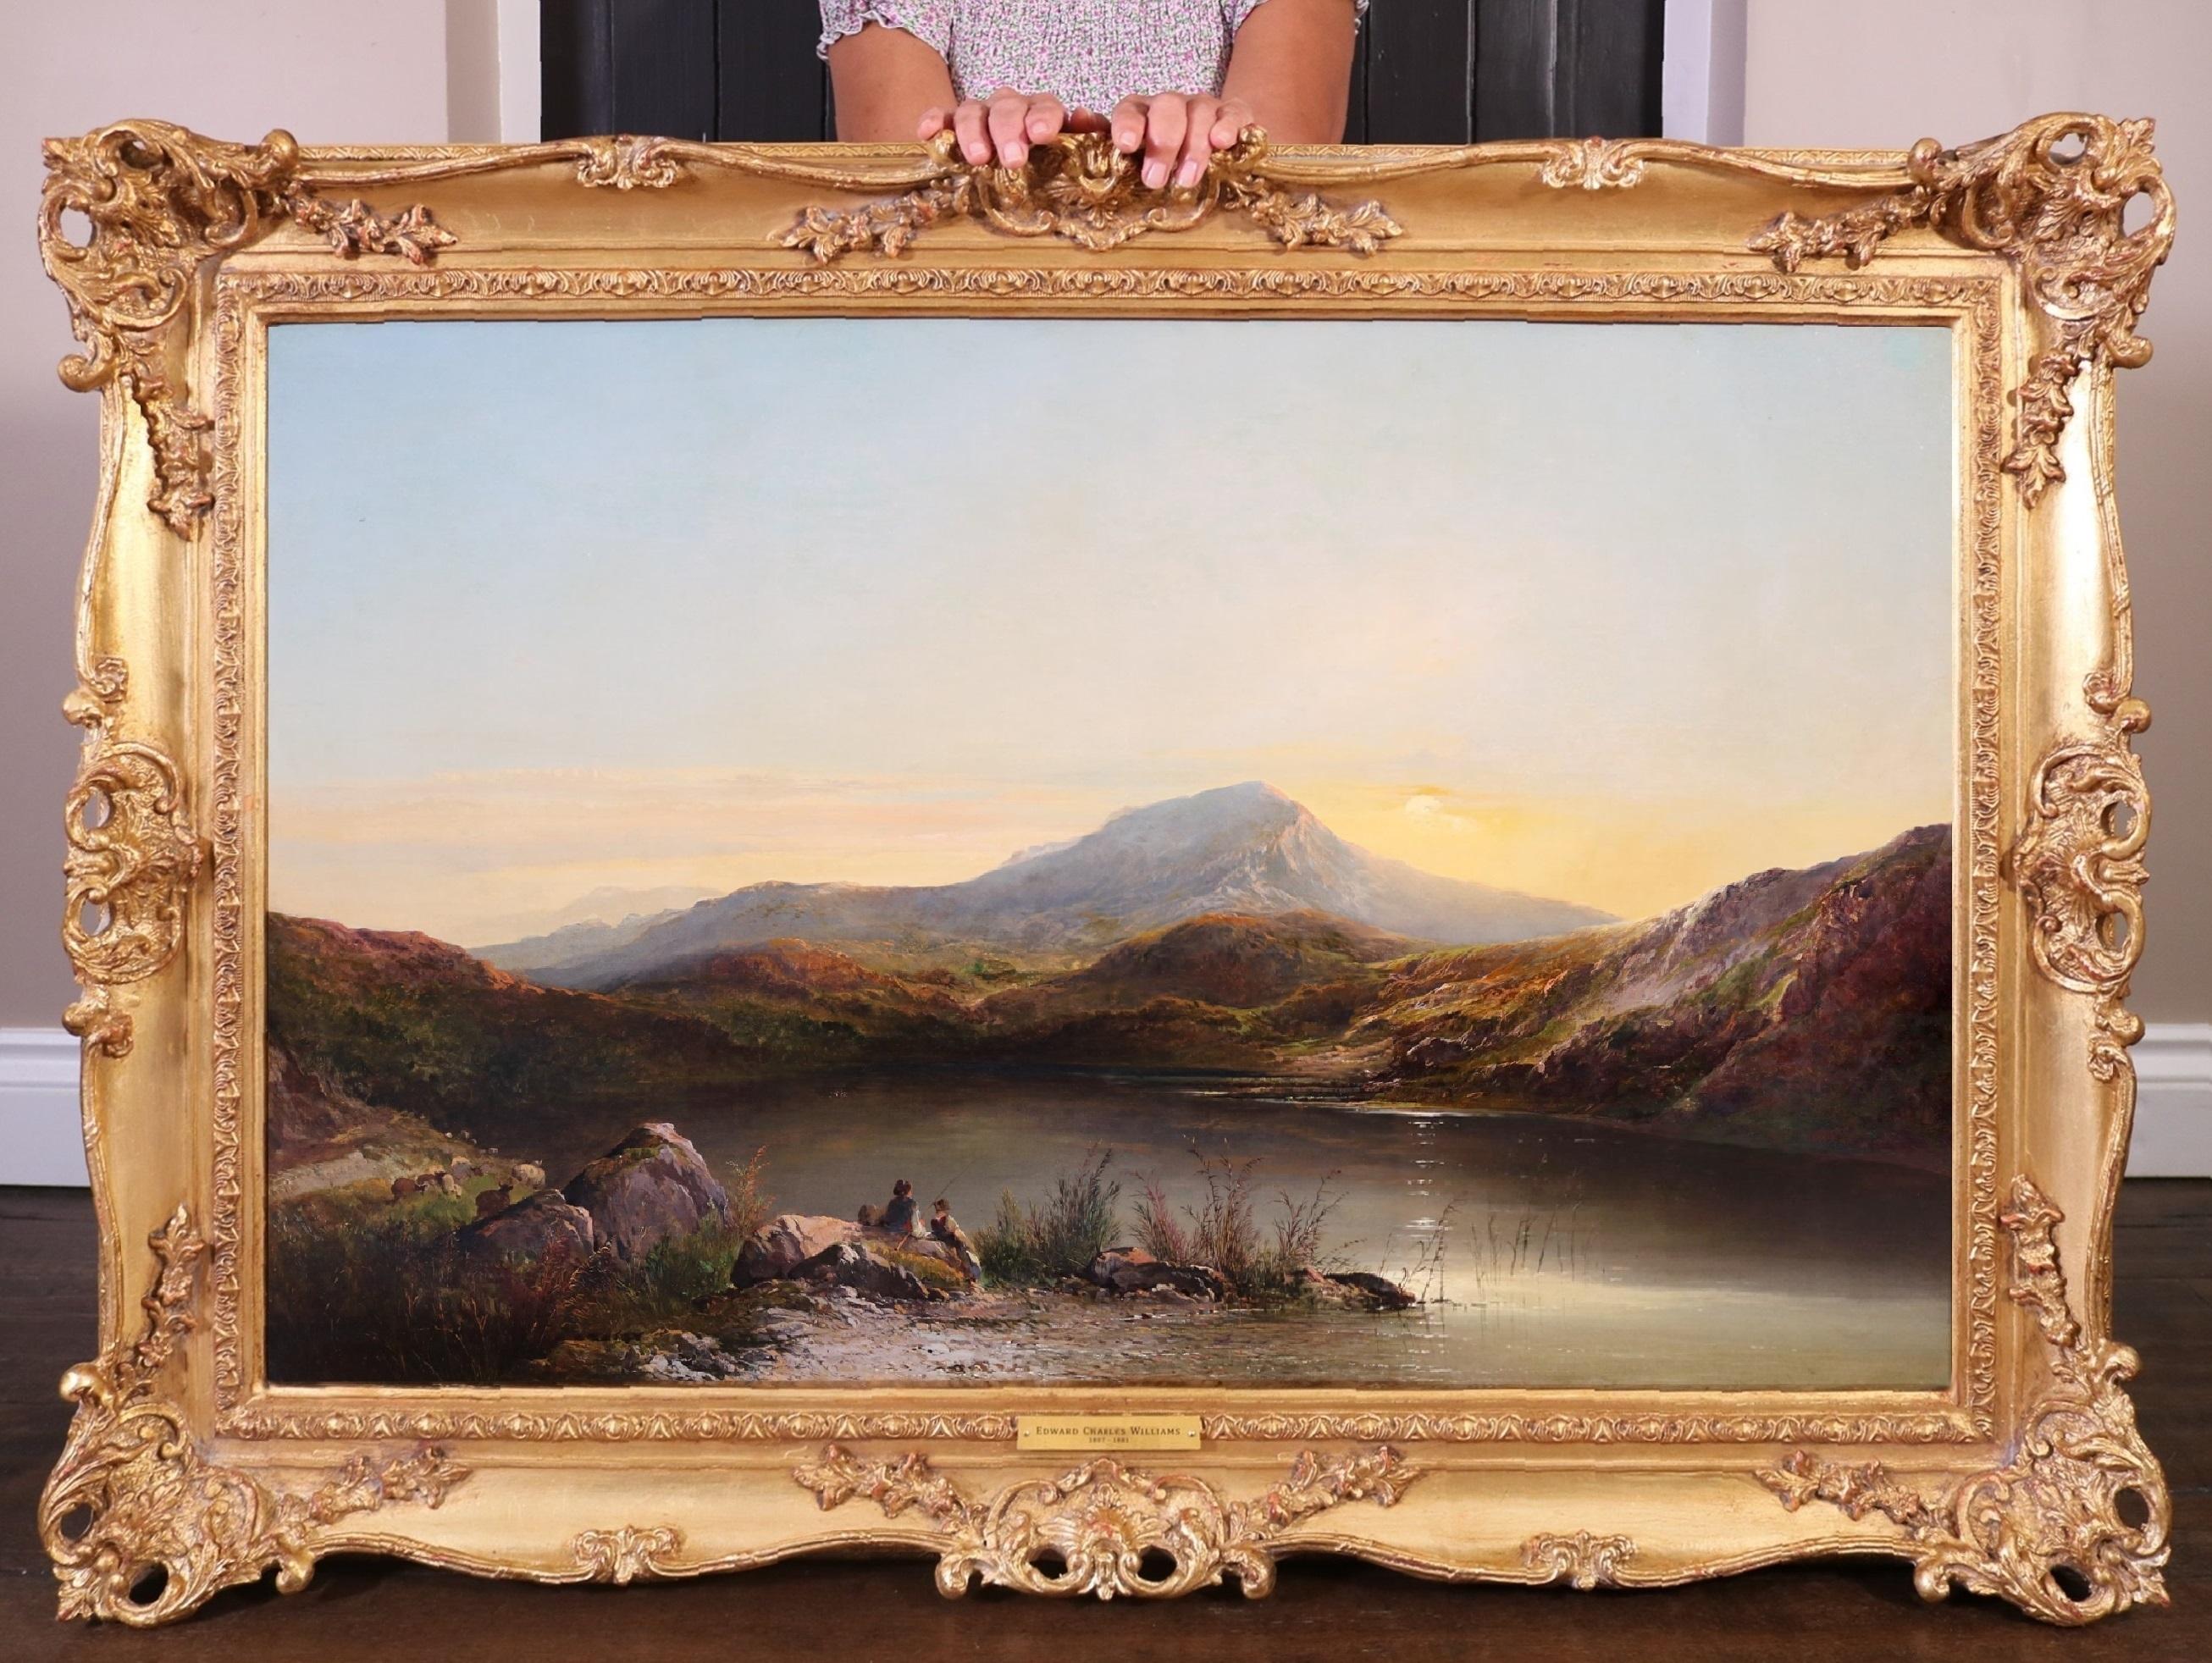 Figurative Painting Edward Charles Williams - Peinture à l'huile de l'Académie royale du 19e siècle représentant un paysage de montagnes galloises sur le mont Snowdon